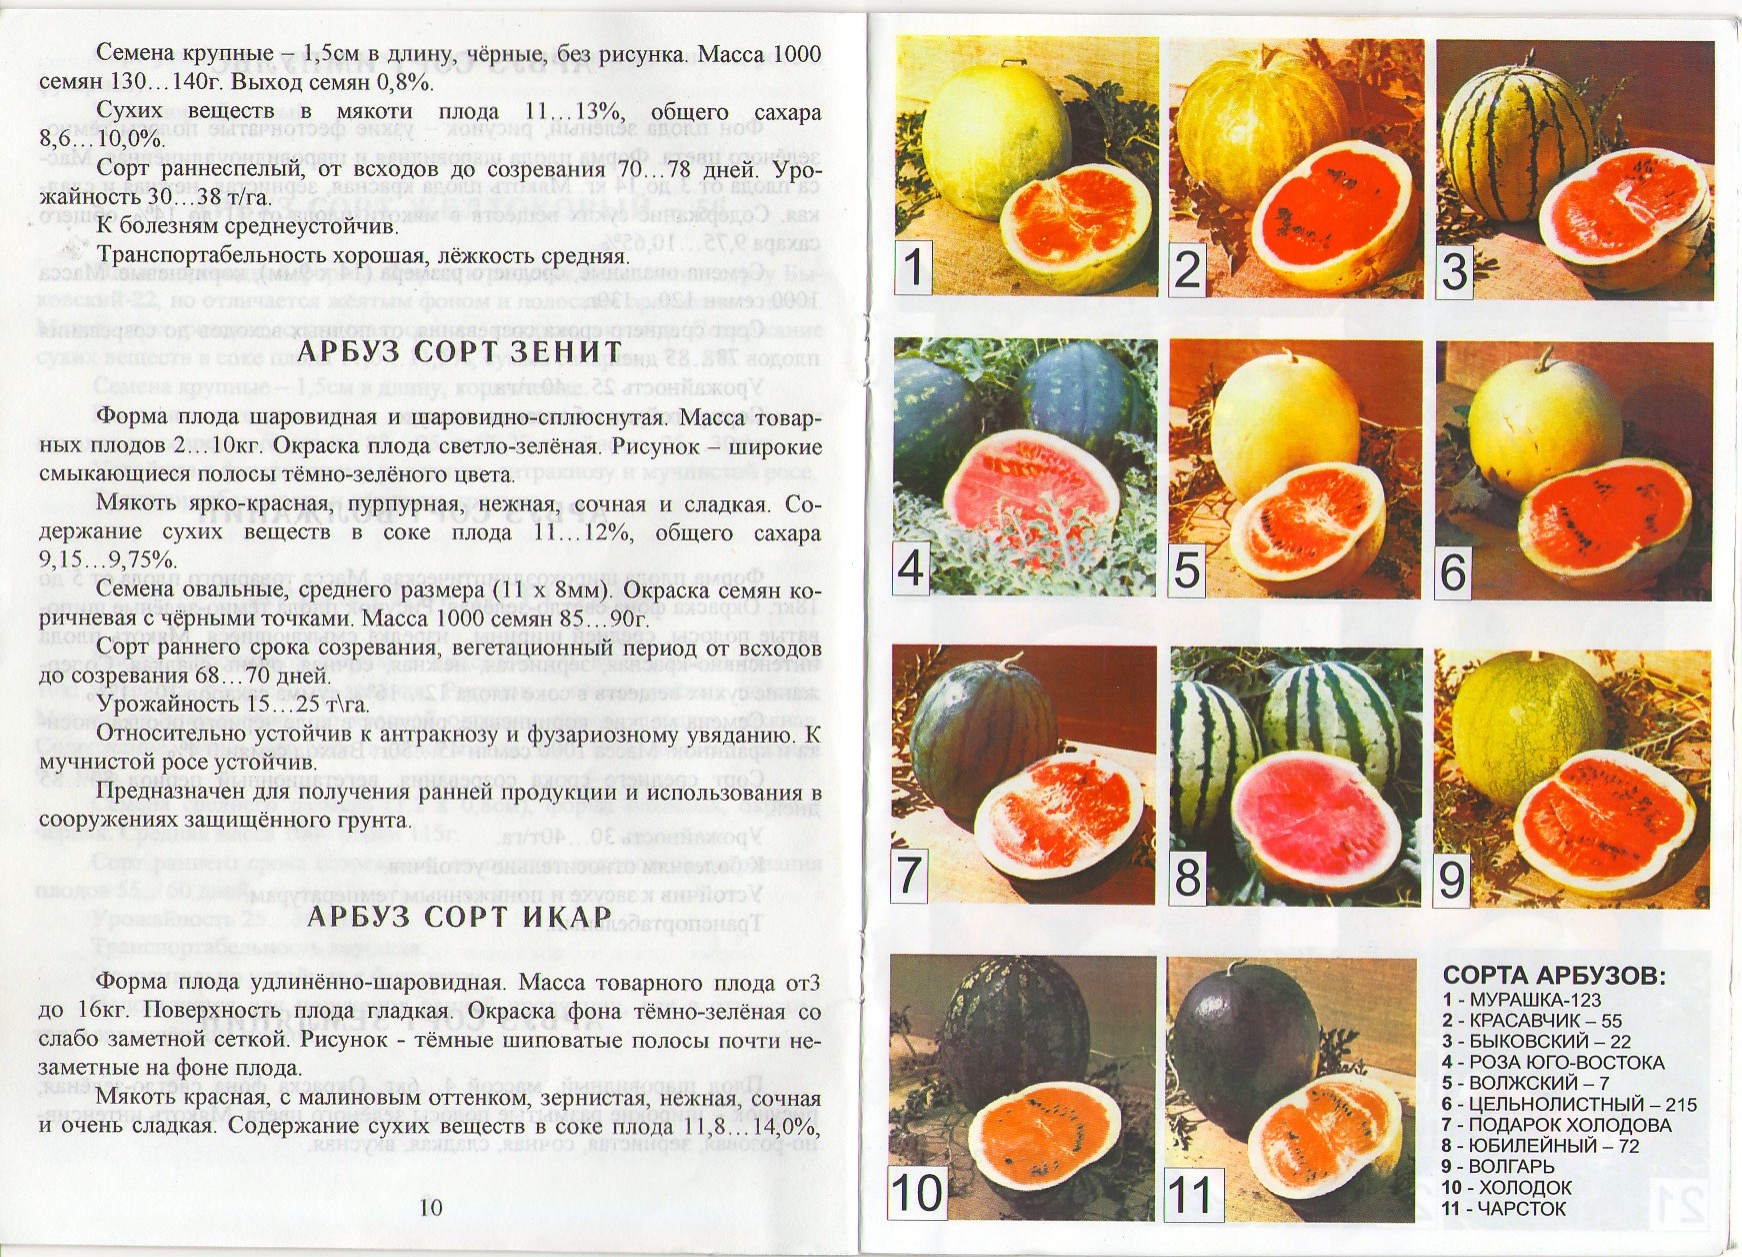 Астраханский арбуз: описание сорта, отзывы, фото